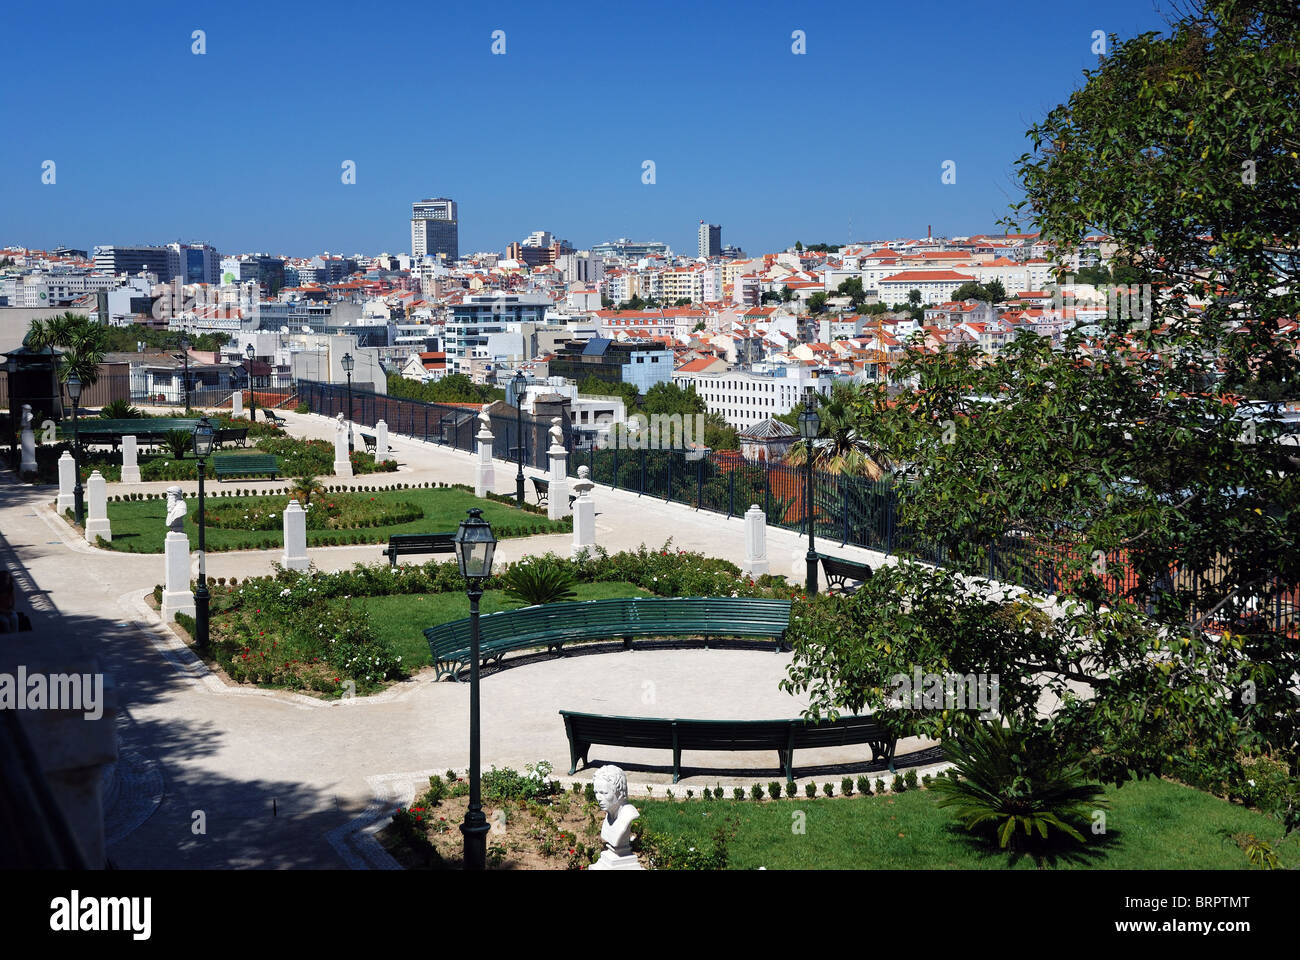 Miradouro de São Pedro de Alcântara - Bairro Alto - Lisbon city  - Portugal - Europe Stock Photo